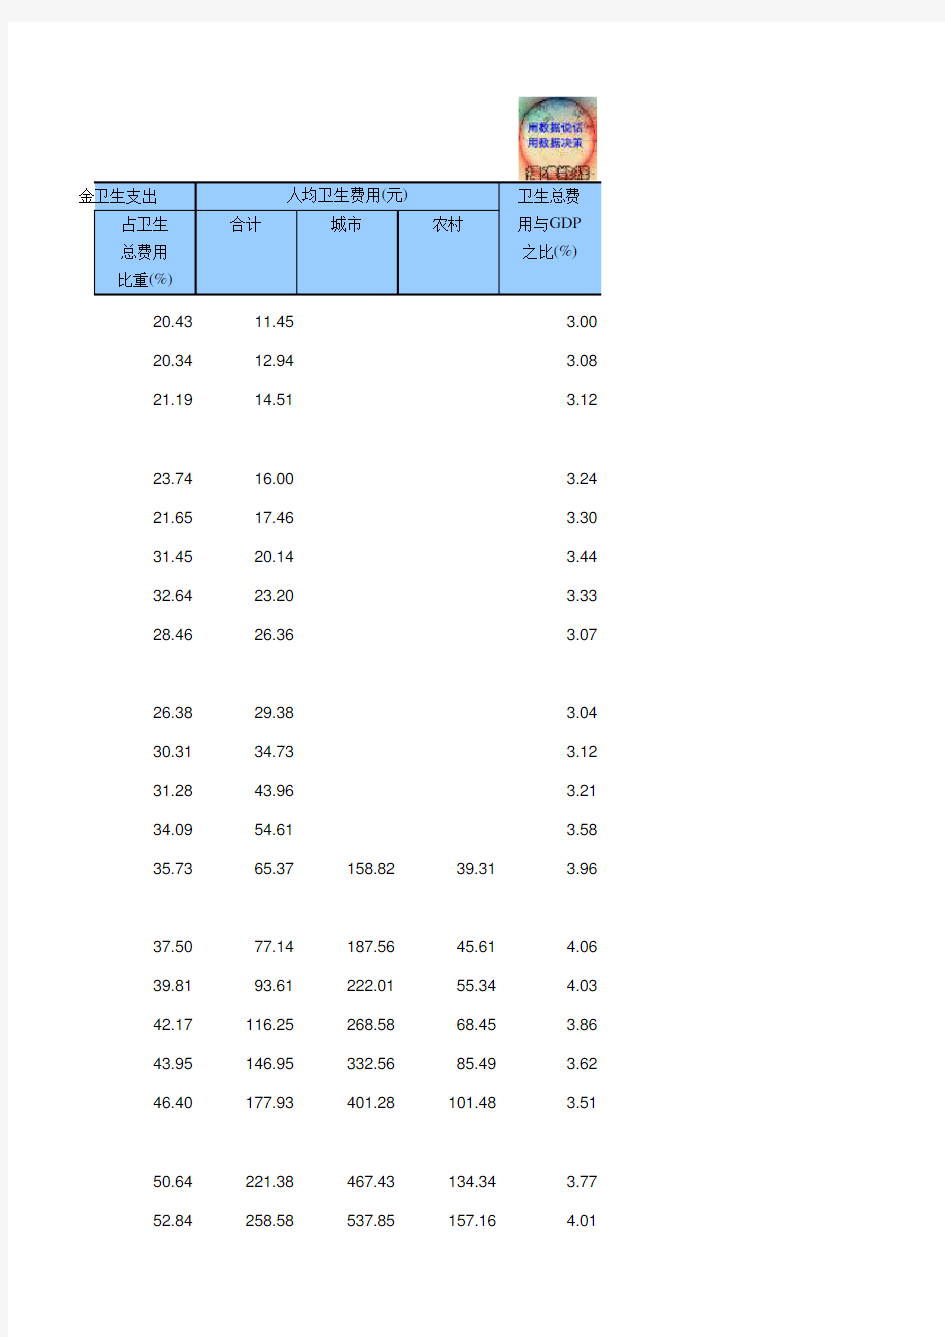 22-19 中国统计年鉴数据处理：卫生总费用(仅全国指标,便于1991-2018多年数据分析对比)